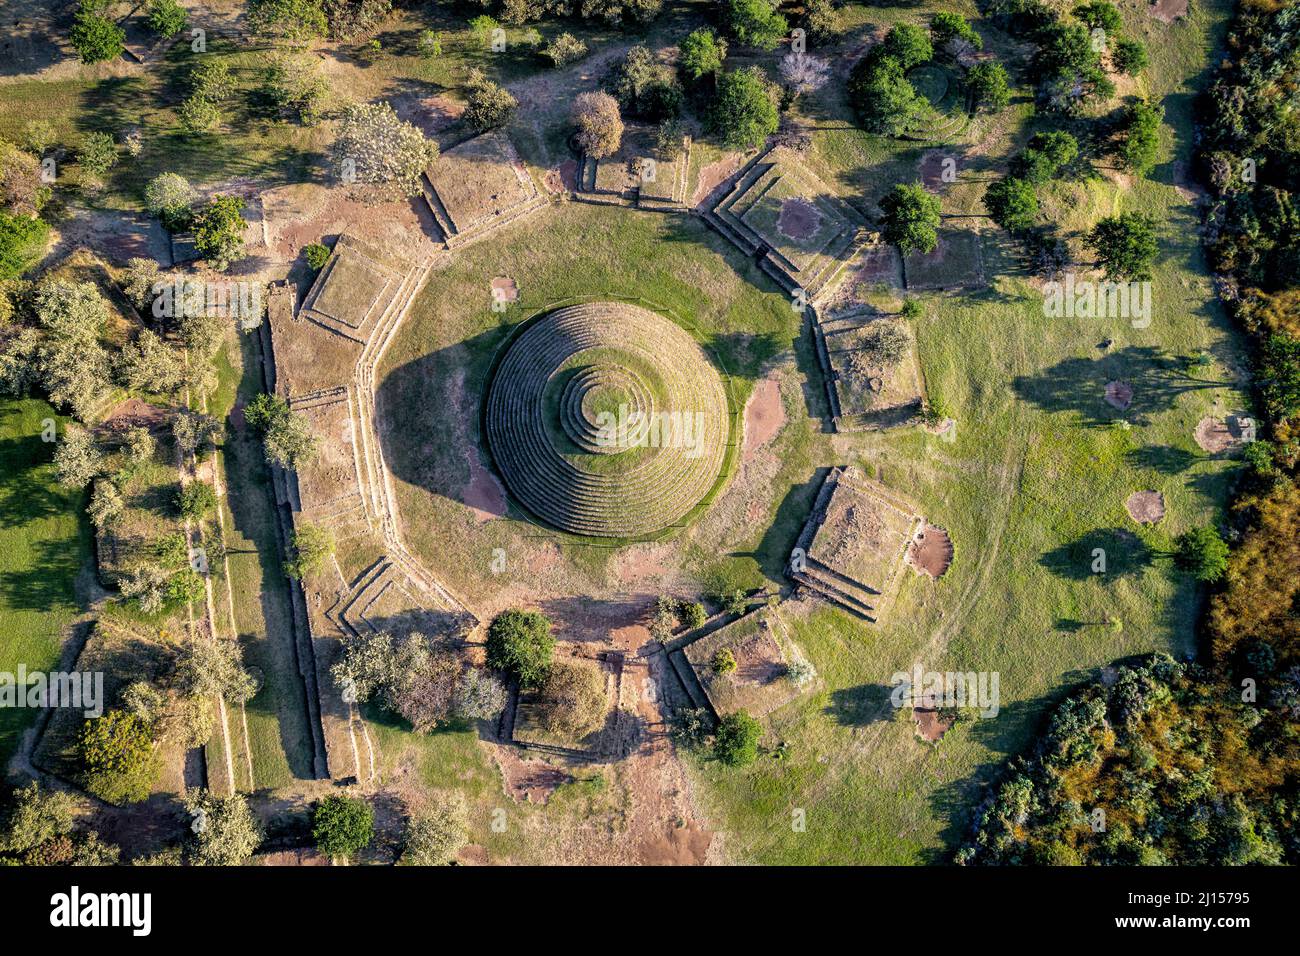 Veduta aerea dei Guachimontones, un sito archeologico precolombiano vicino a Teuchitlan, Jalisco, Messico. Foto Stock